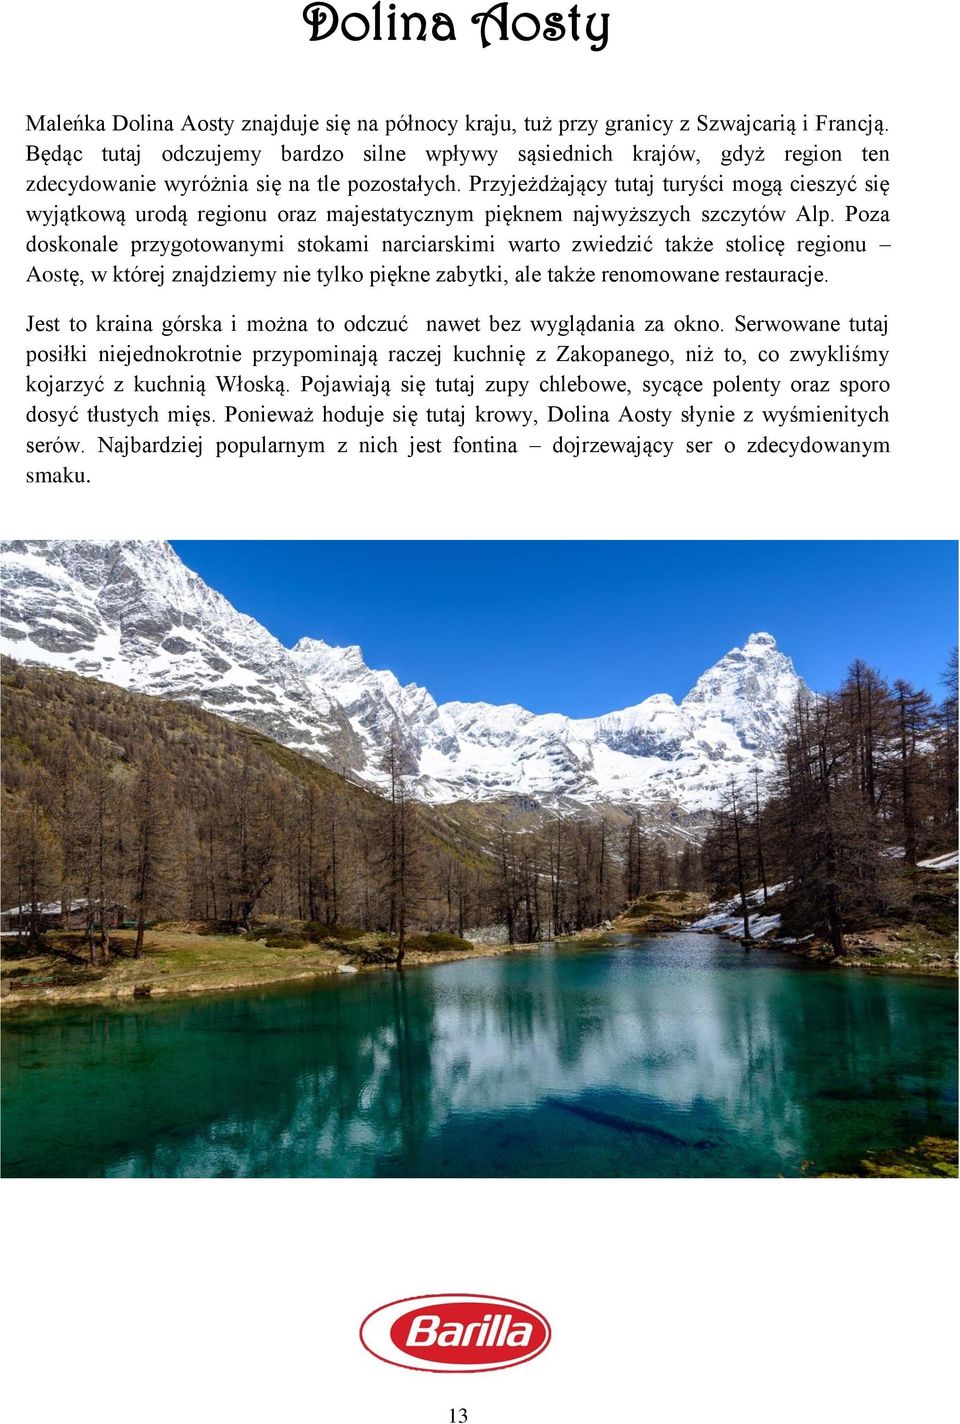 Przyjeżdżający tutaj turyści mogą cieszyć się wyjątkową urodą regionu oraz majestatycznym pięknem najwyższych szczytów Alp.